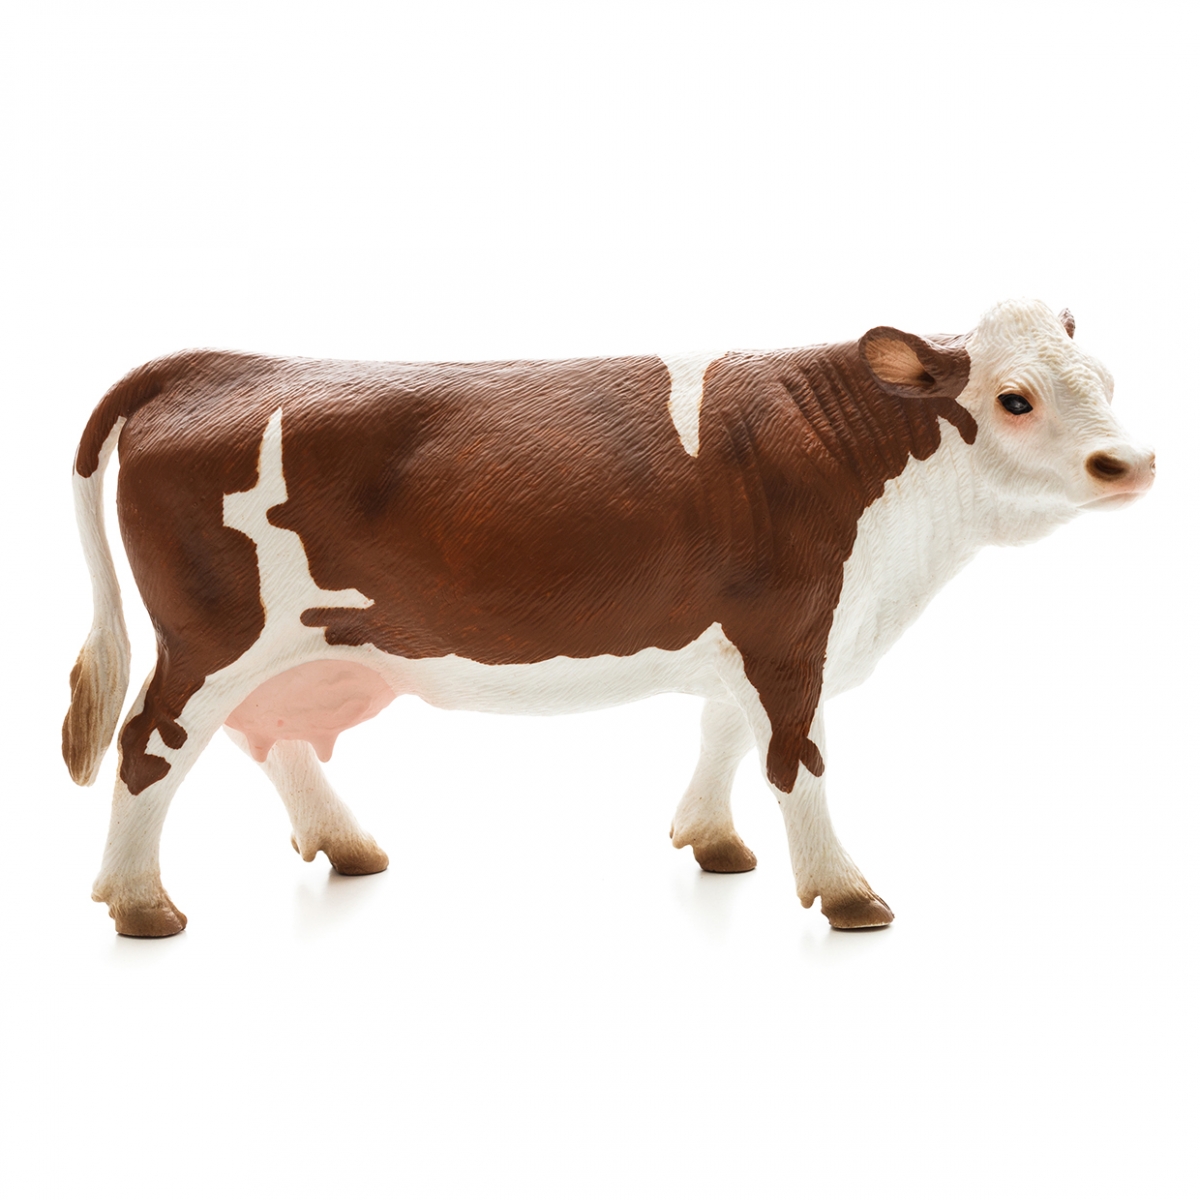 Imagen en la que se ve una vaca en perspectiva lateral